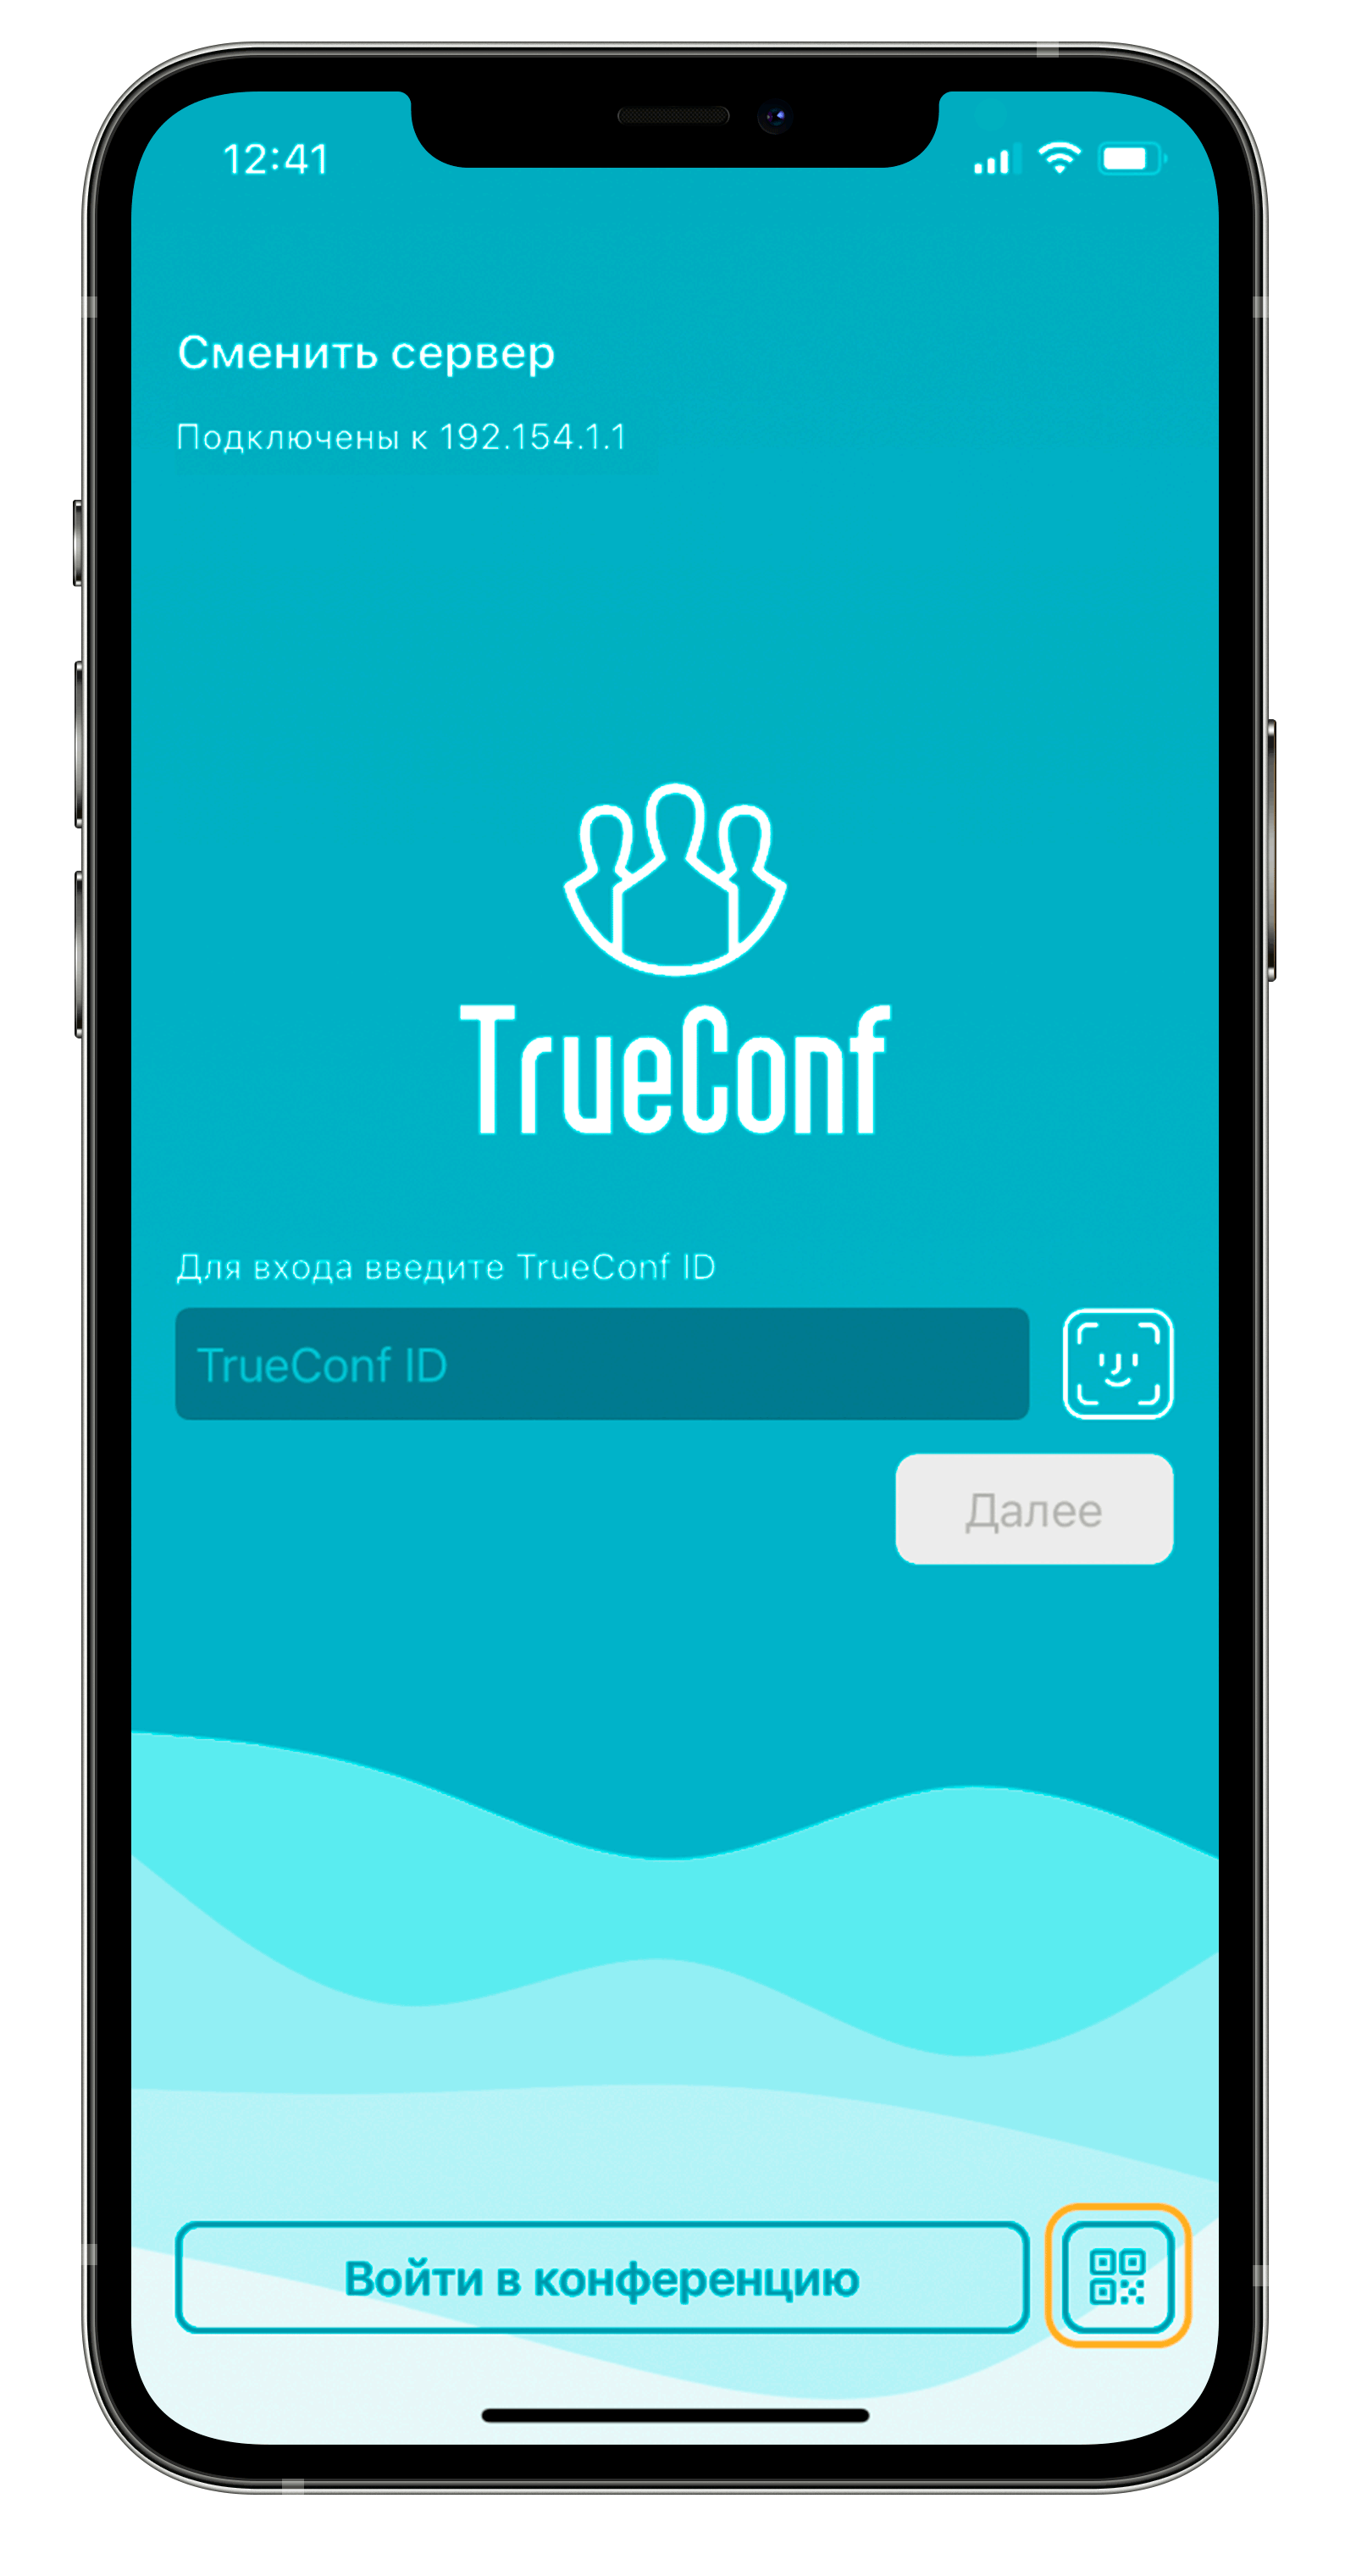 Обновление TrueConf 3.2.3 для iOS: автоматический фокус на выступающих, PIN и QR-коды для входа в конференцию 7